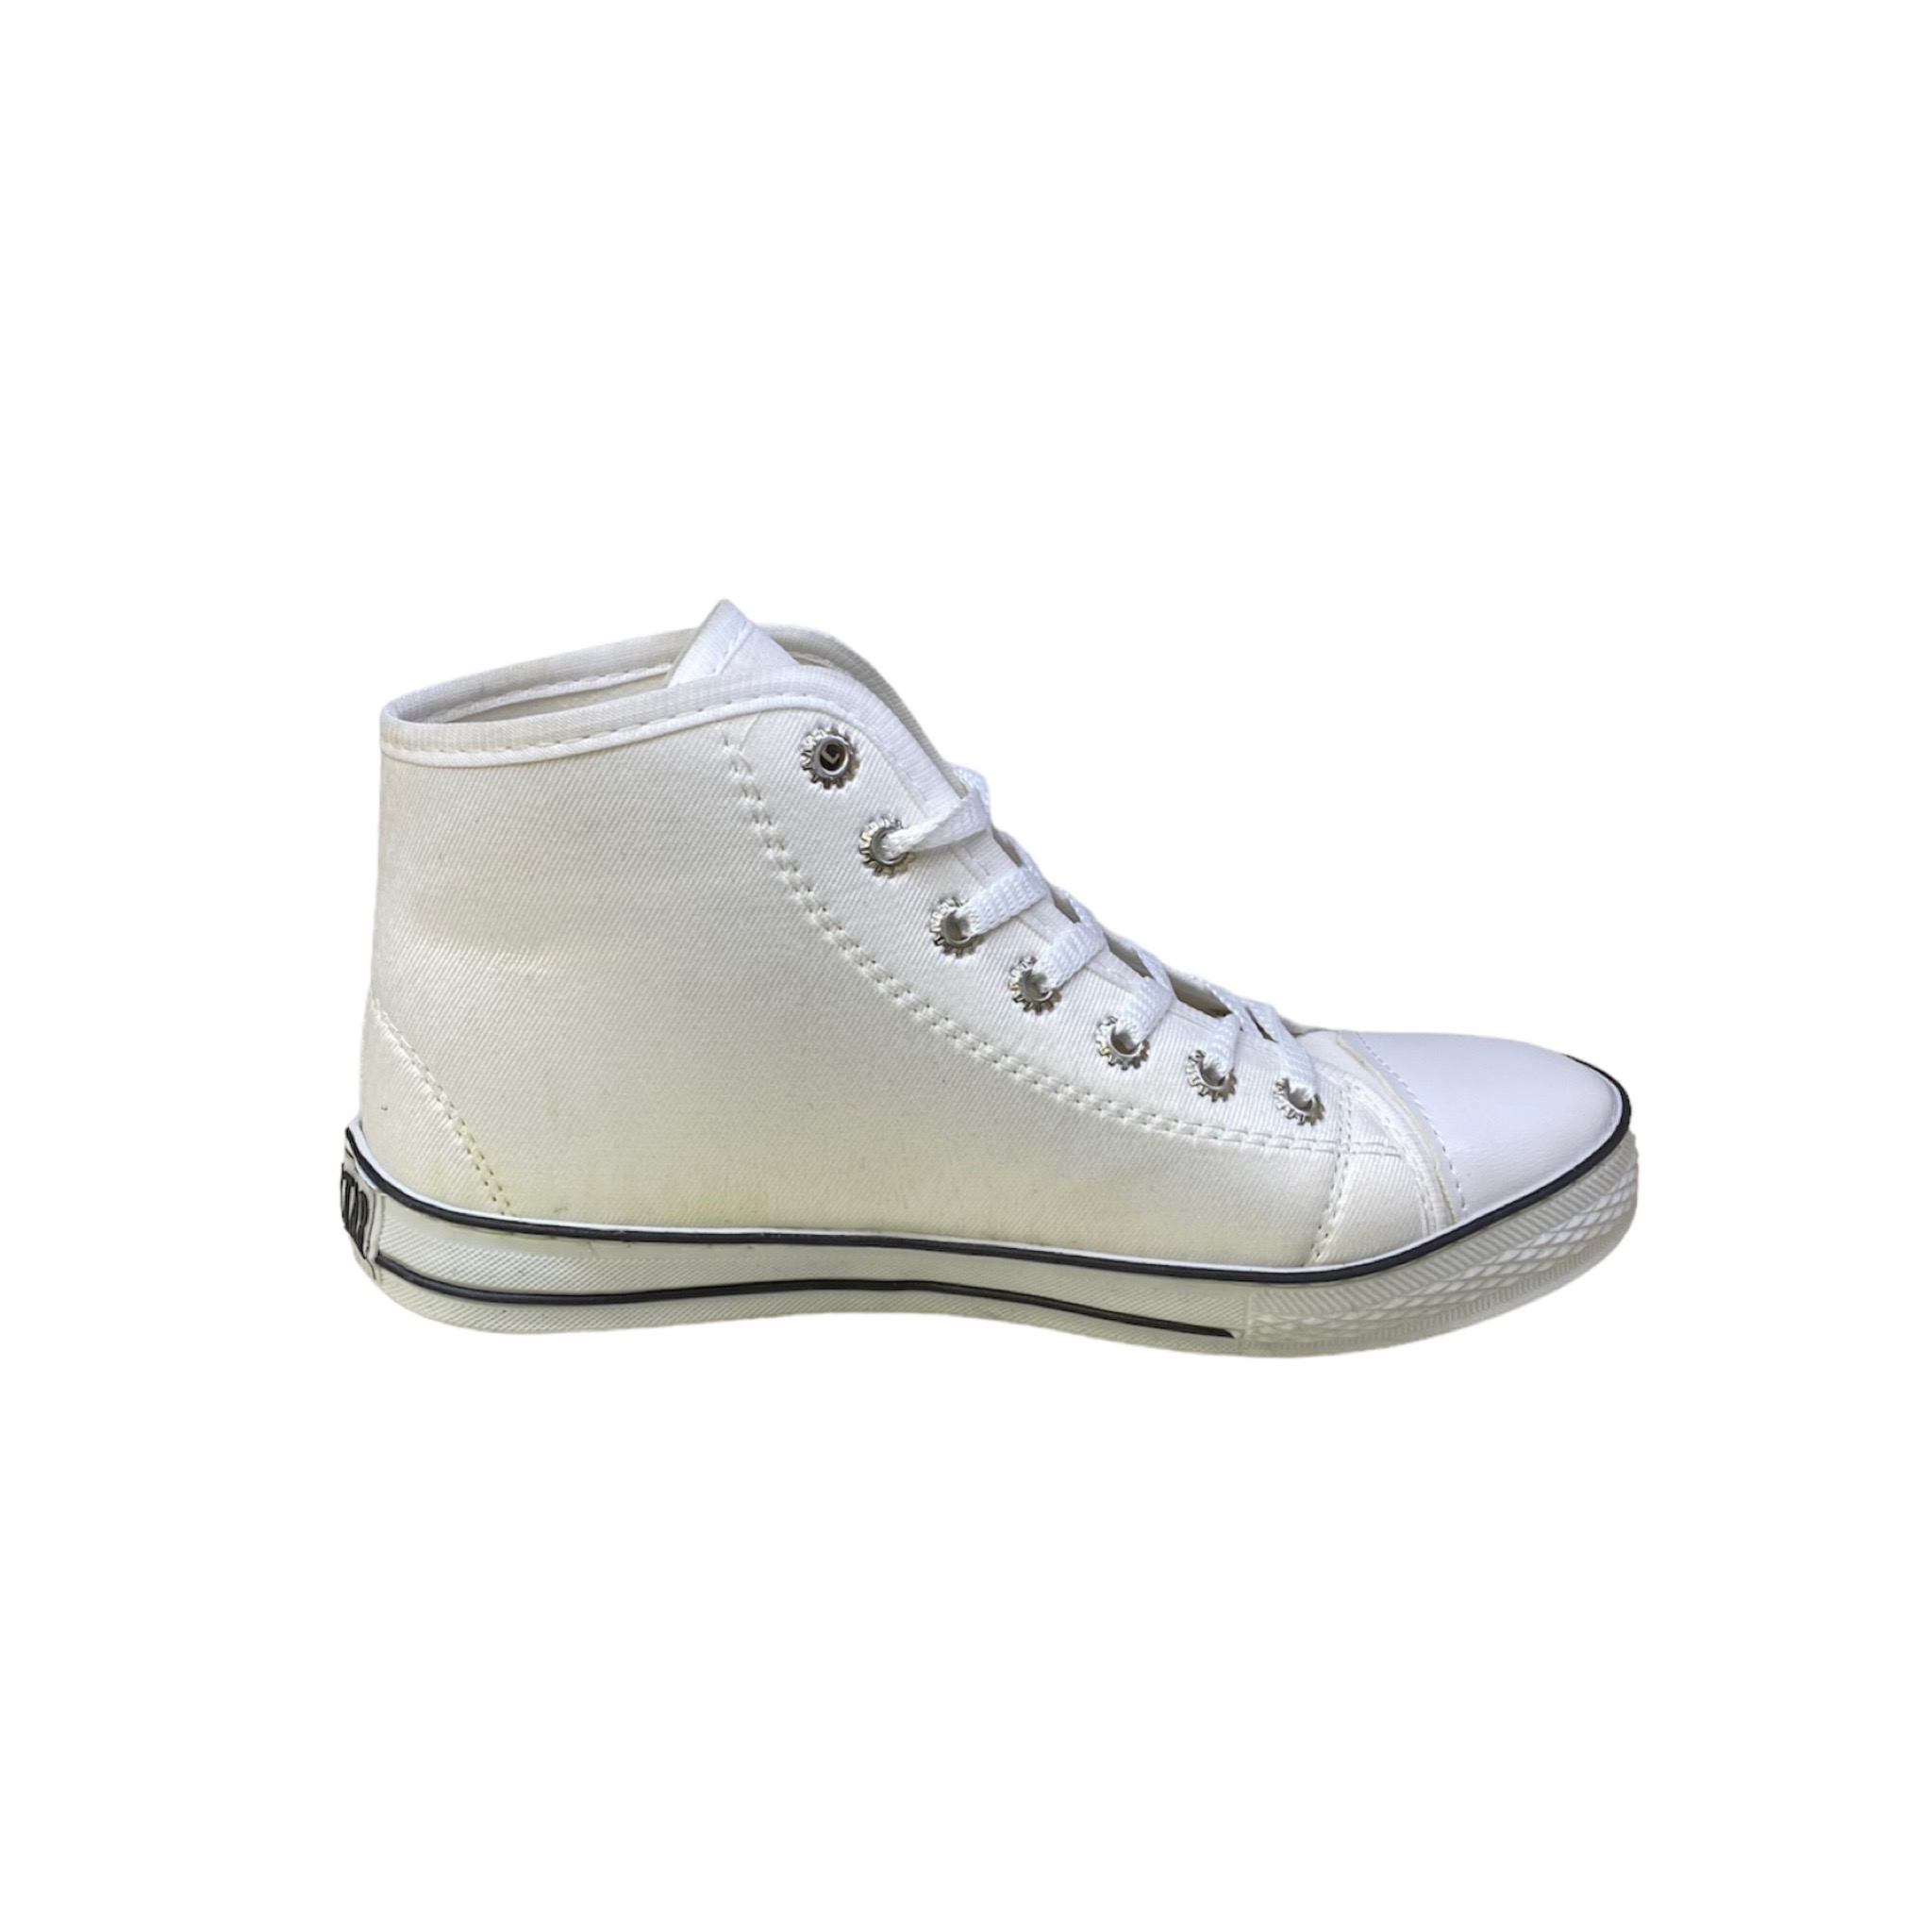 کفش پیاده روی مردانه مدل آلستار1597 زیره پیو رنگ سفید